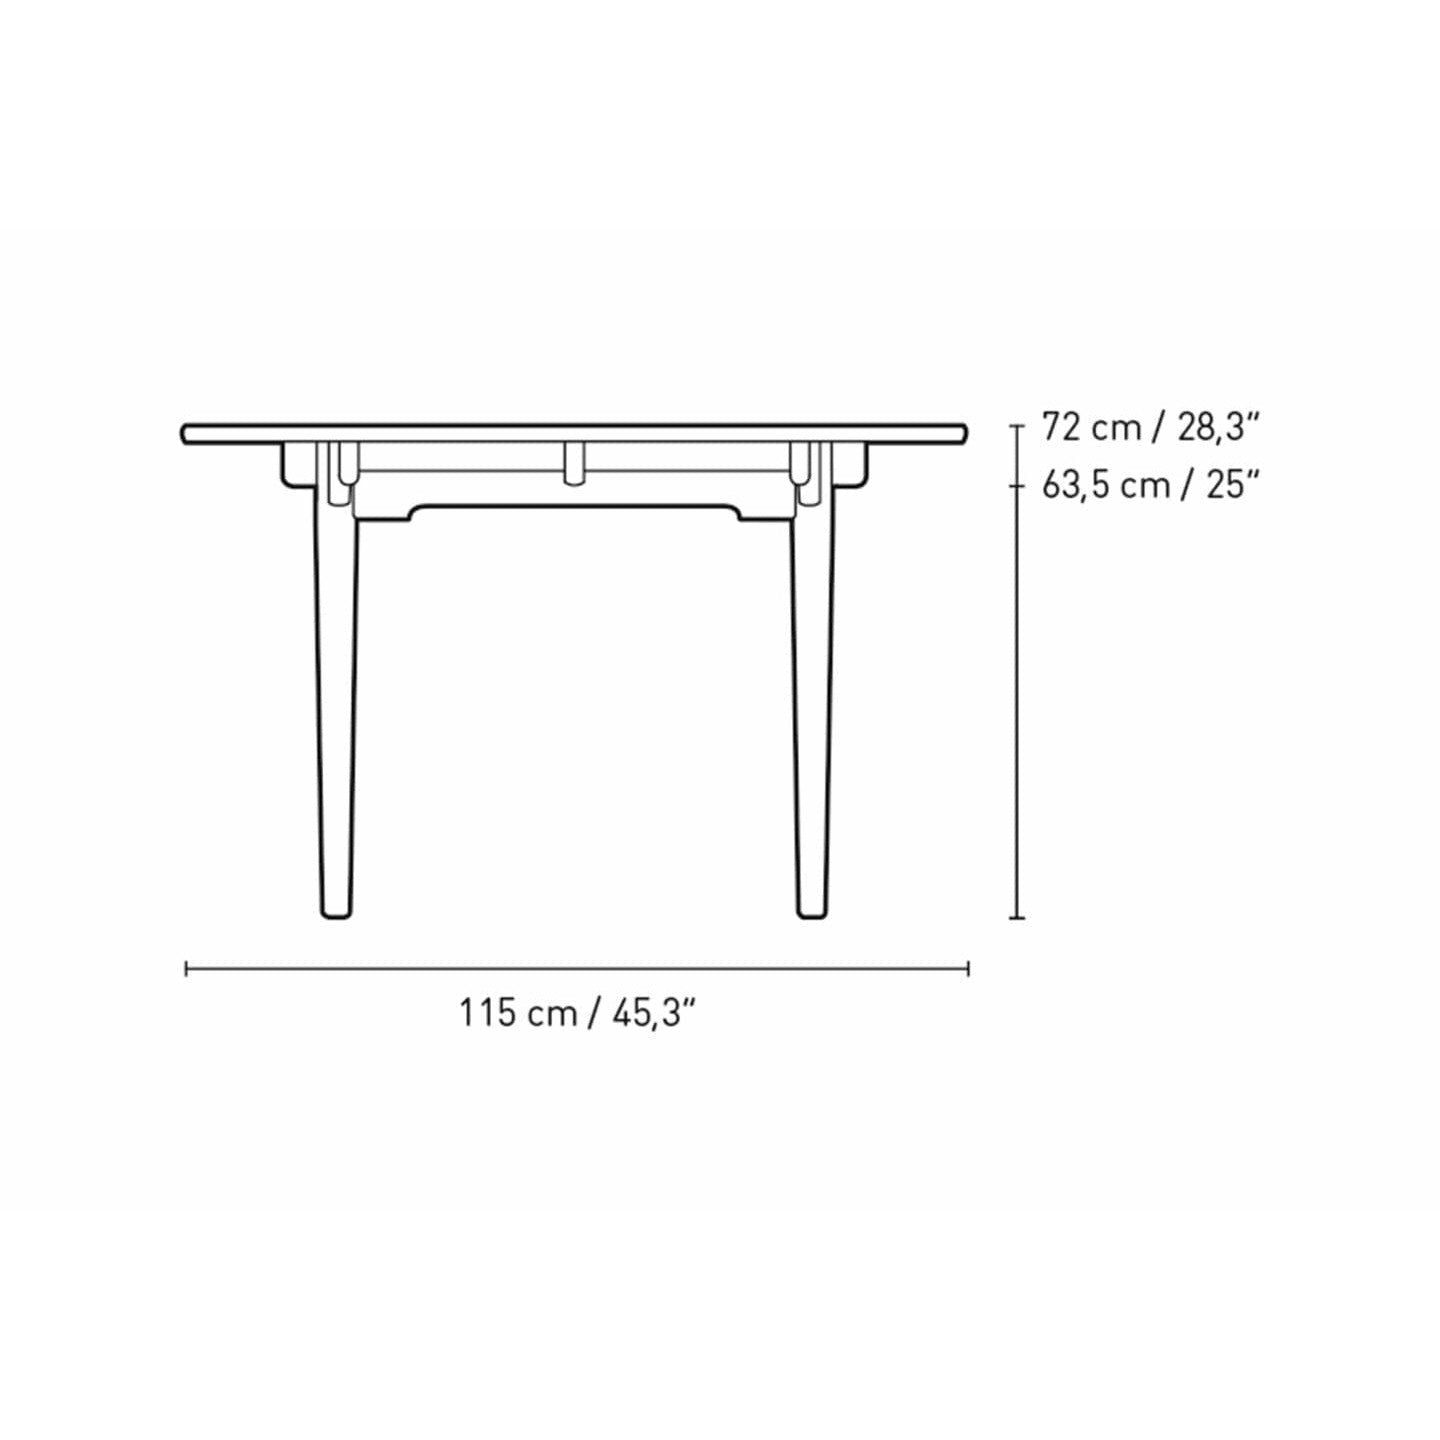 Carl Hansen CH339 matbord designat för 4 utdragbara plattor, ekrökfärgad olja